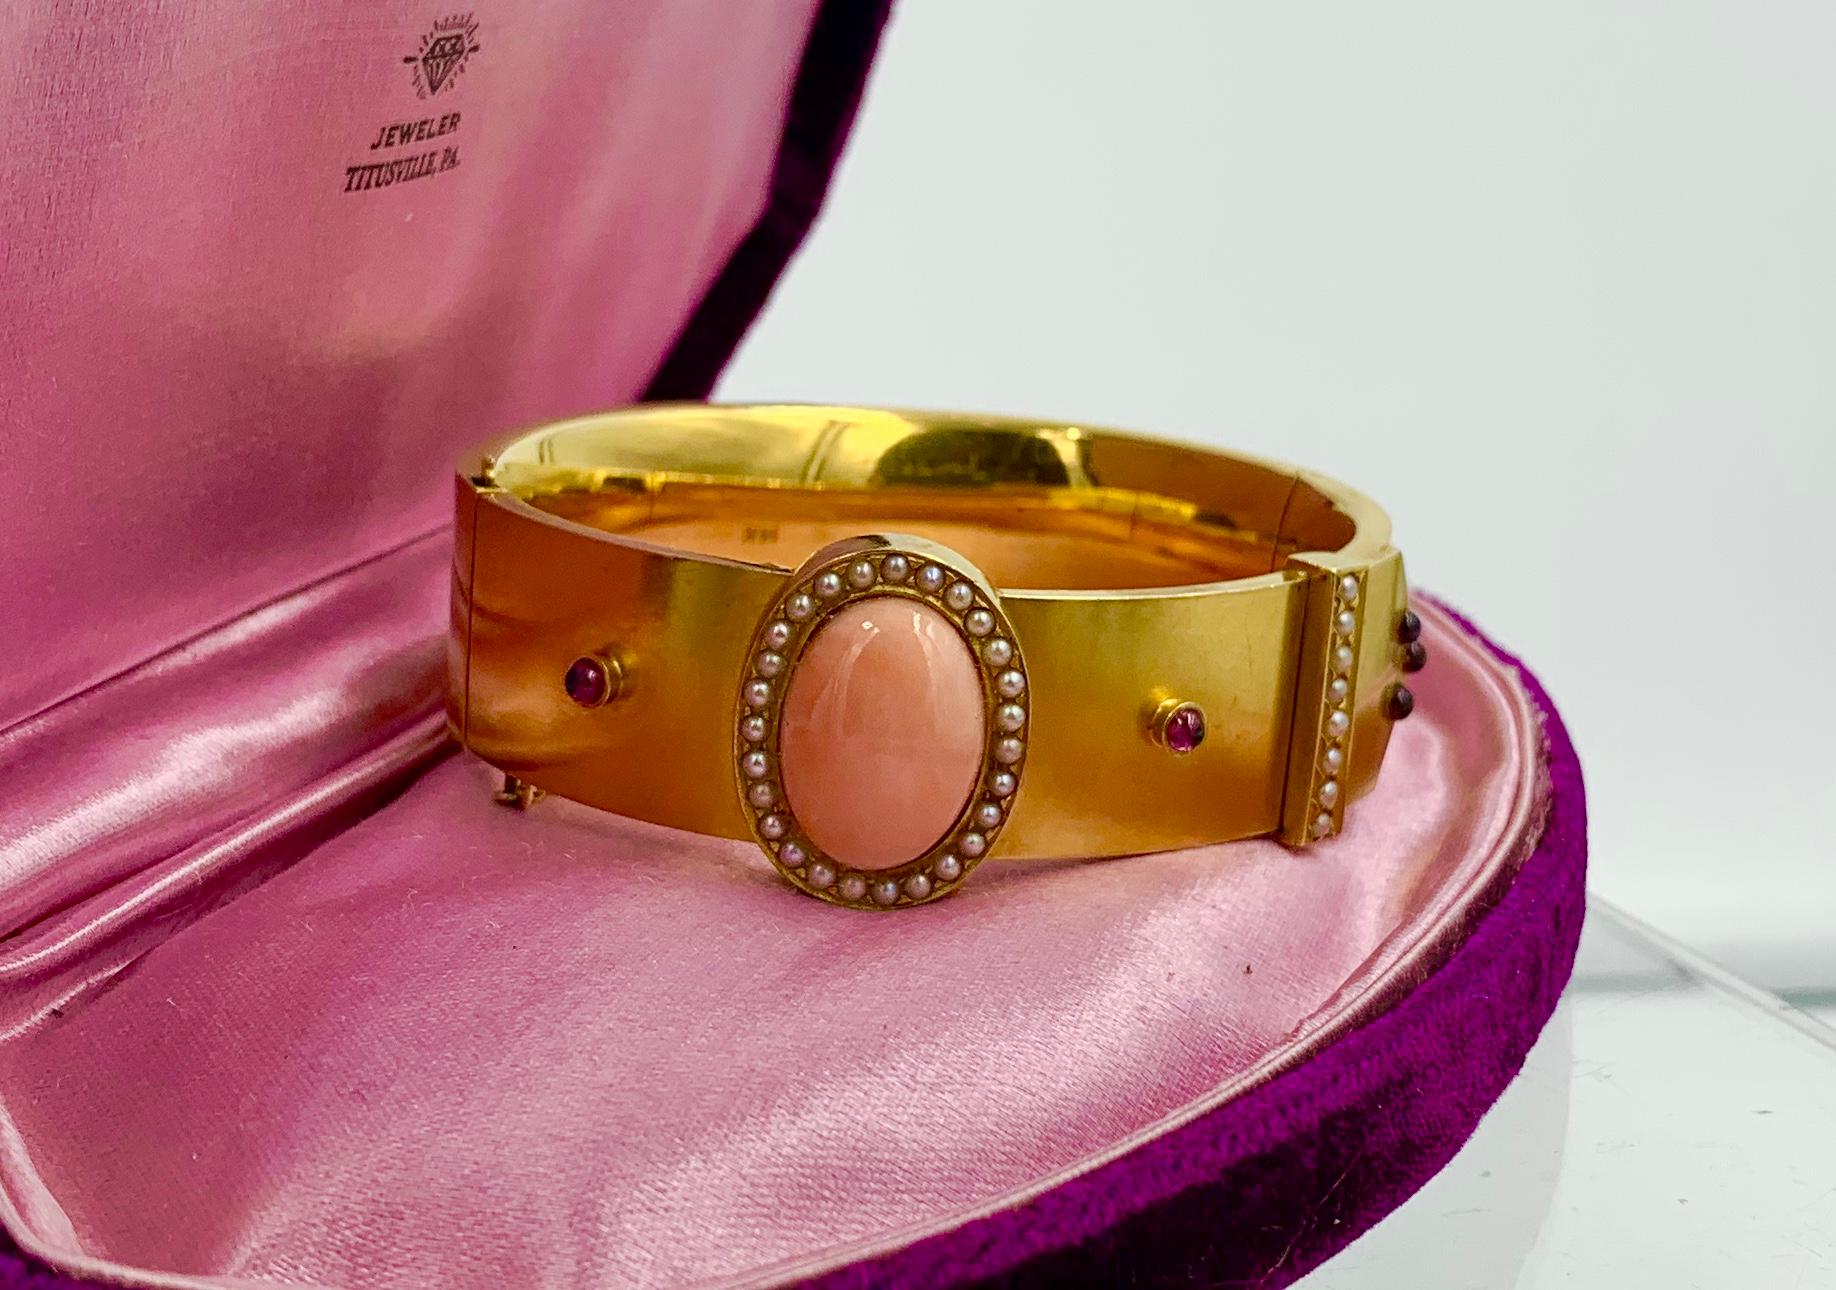 Un spectaculaire bracelet victorien en or 14 carats en forme de boucle avec un étonnant cabochon central en corail saumoné avec des accents de perles de rocaille et de grenat de Bohème.  Le Coral est une couleur rose saumon parfaite.  Il s'agit d'un